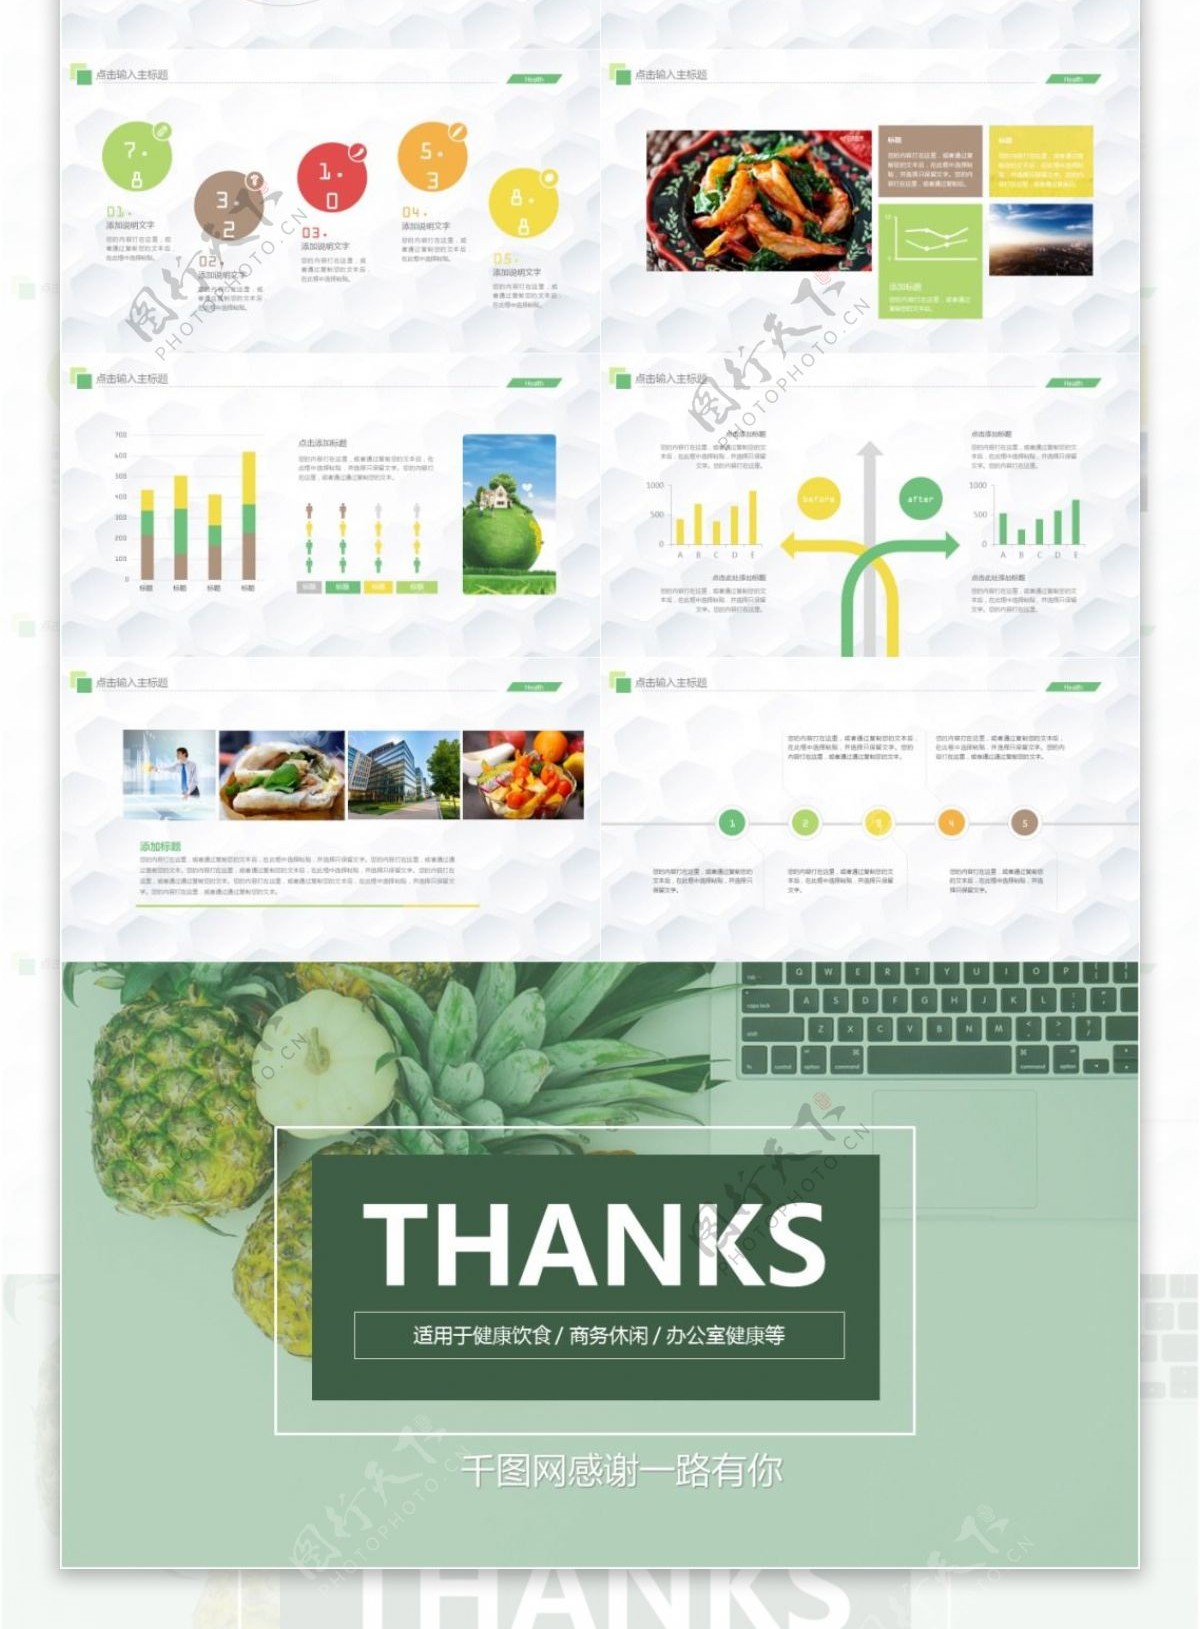 快乐工作合理饮食健康产品介绍ppt模板免费下载